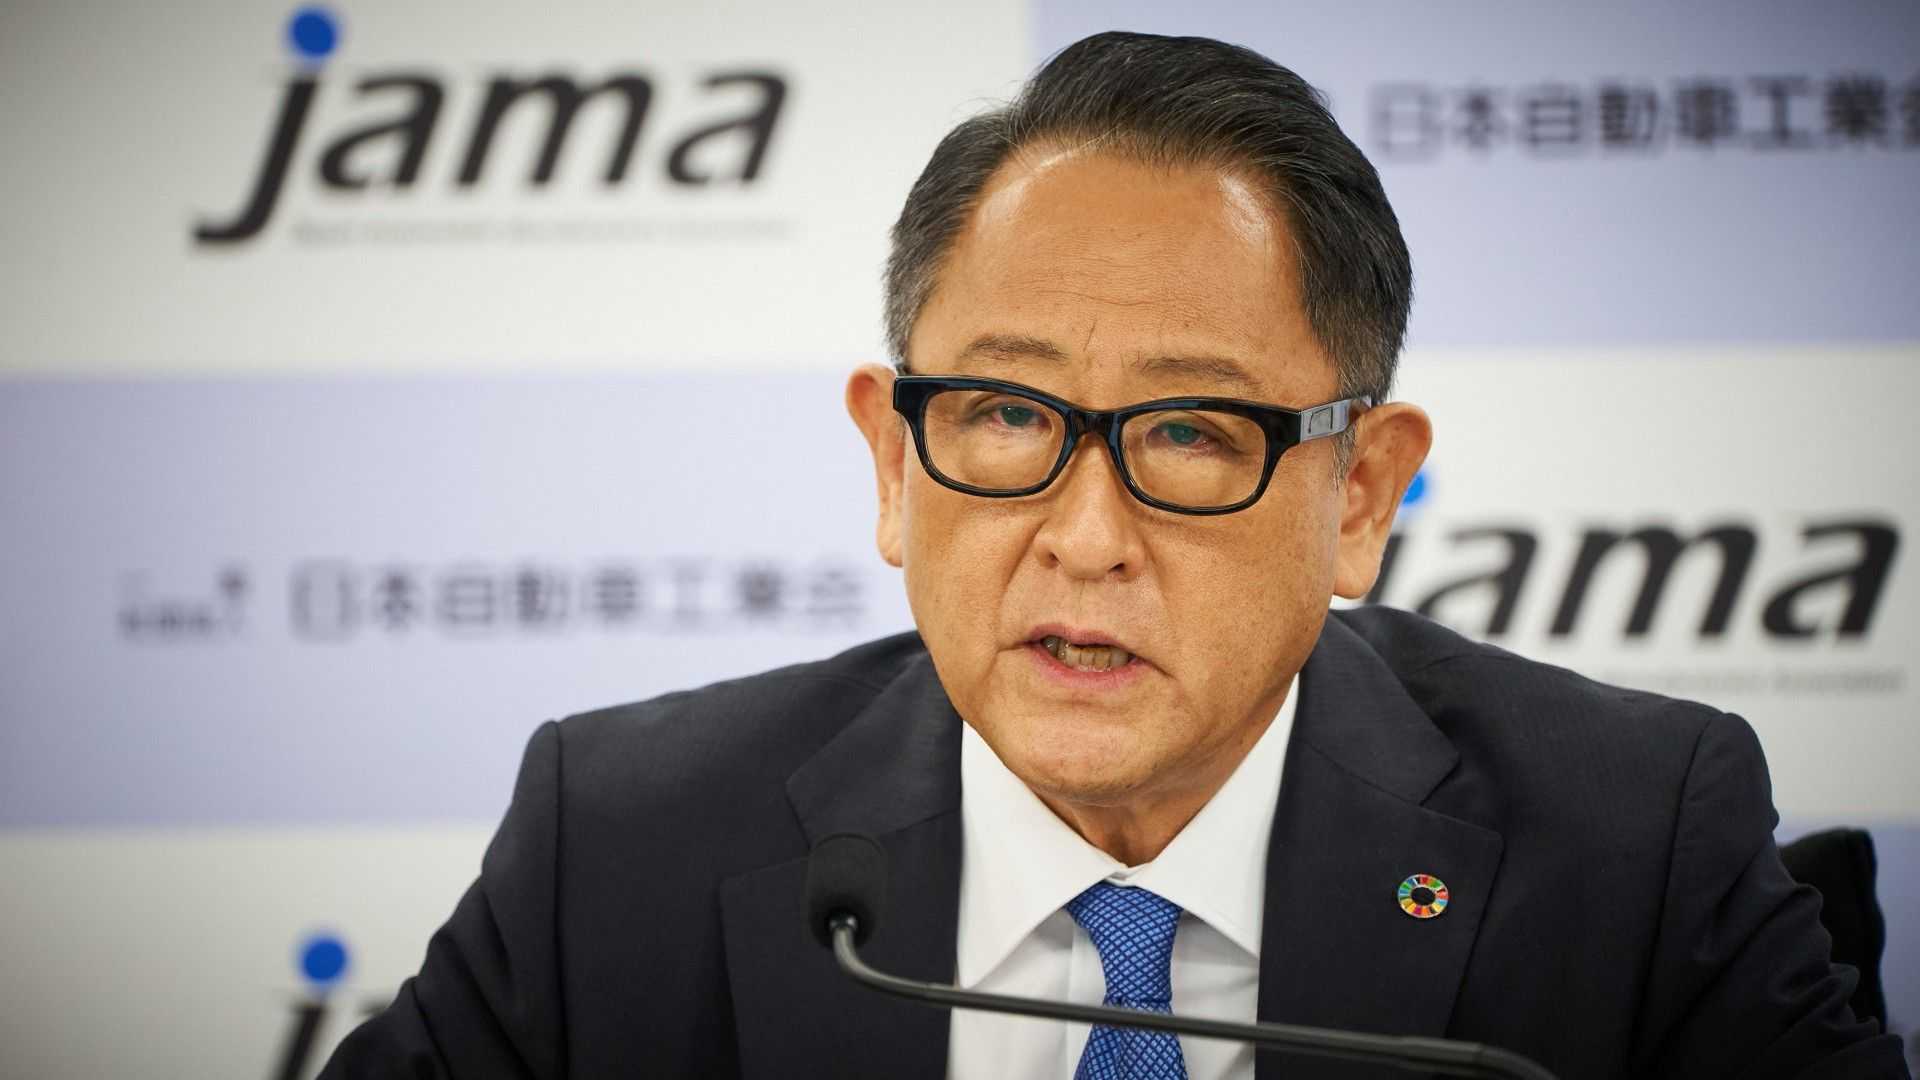 رئيس تويوتا يحذر من فقدان 5.5 مليون وظيفة في اليابان مع حظر البنزين والديزل